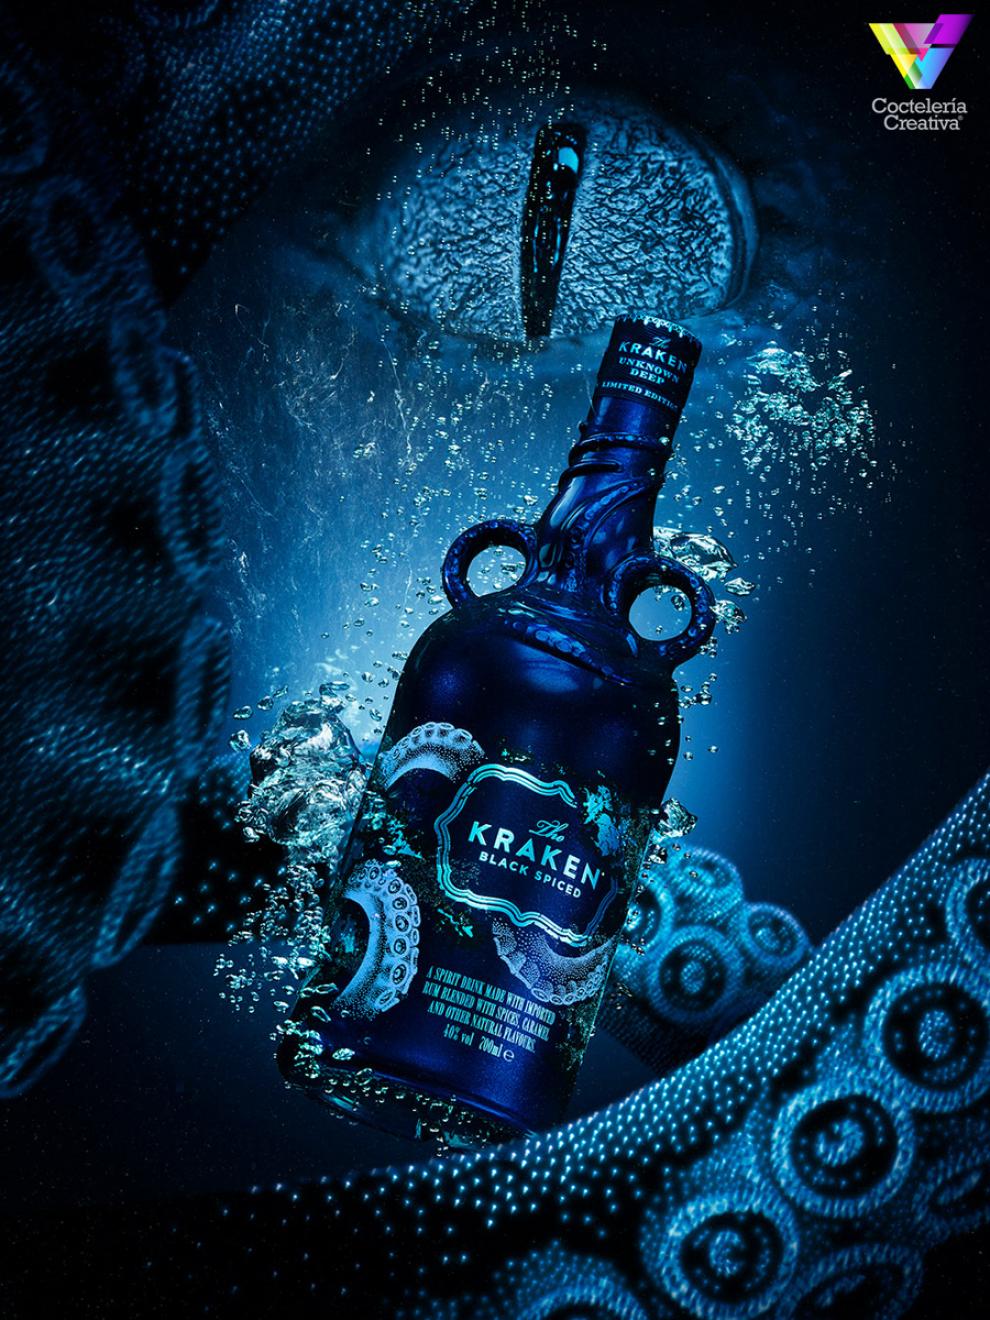 Botella Edición Limitada The Kraken con bioluminiscencia